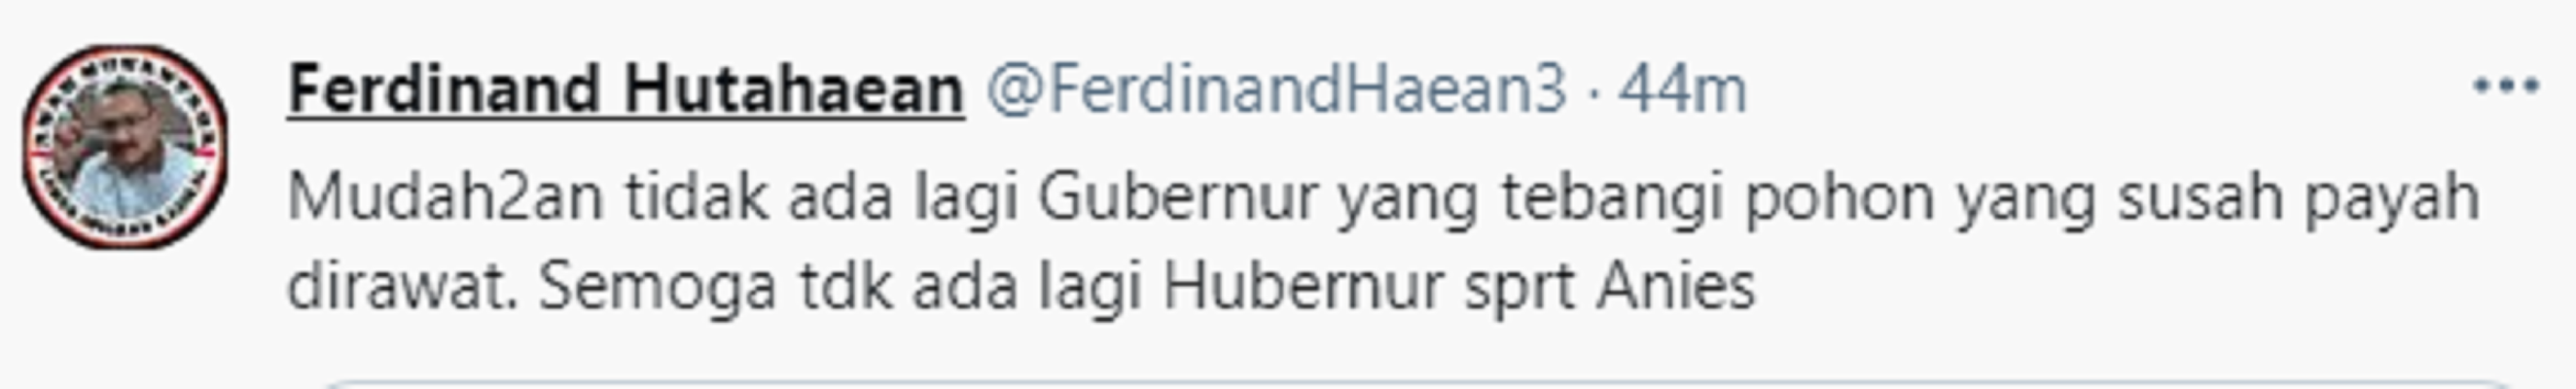 Cuitan Ferdinand Hutahaean soal Gubernu DKI Jakarta Anies Baswedan.